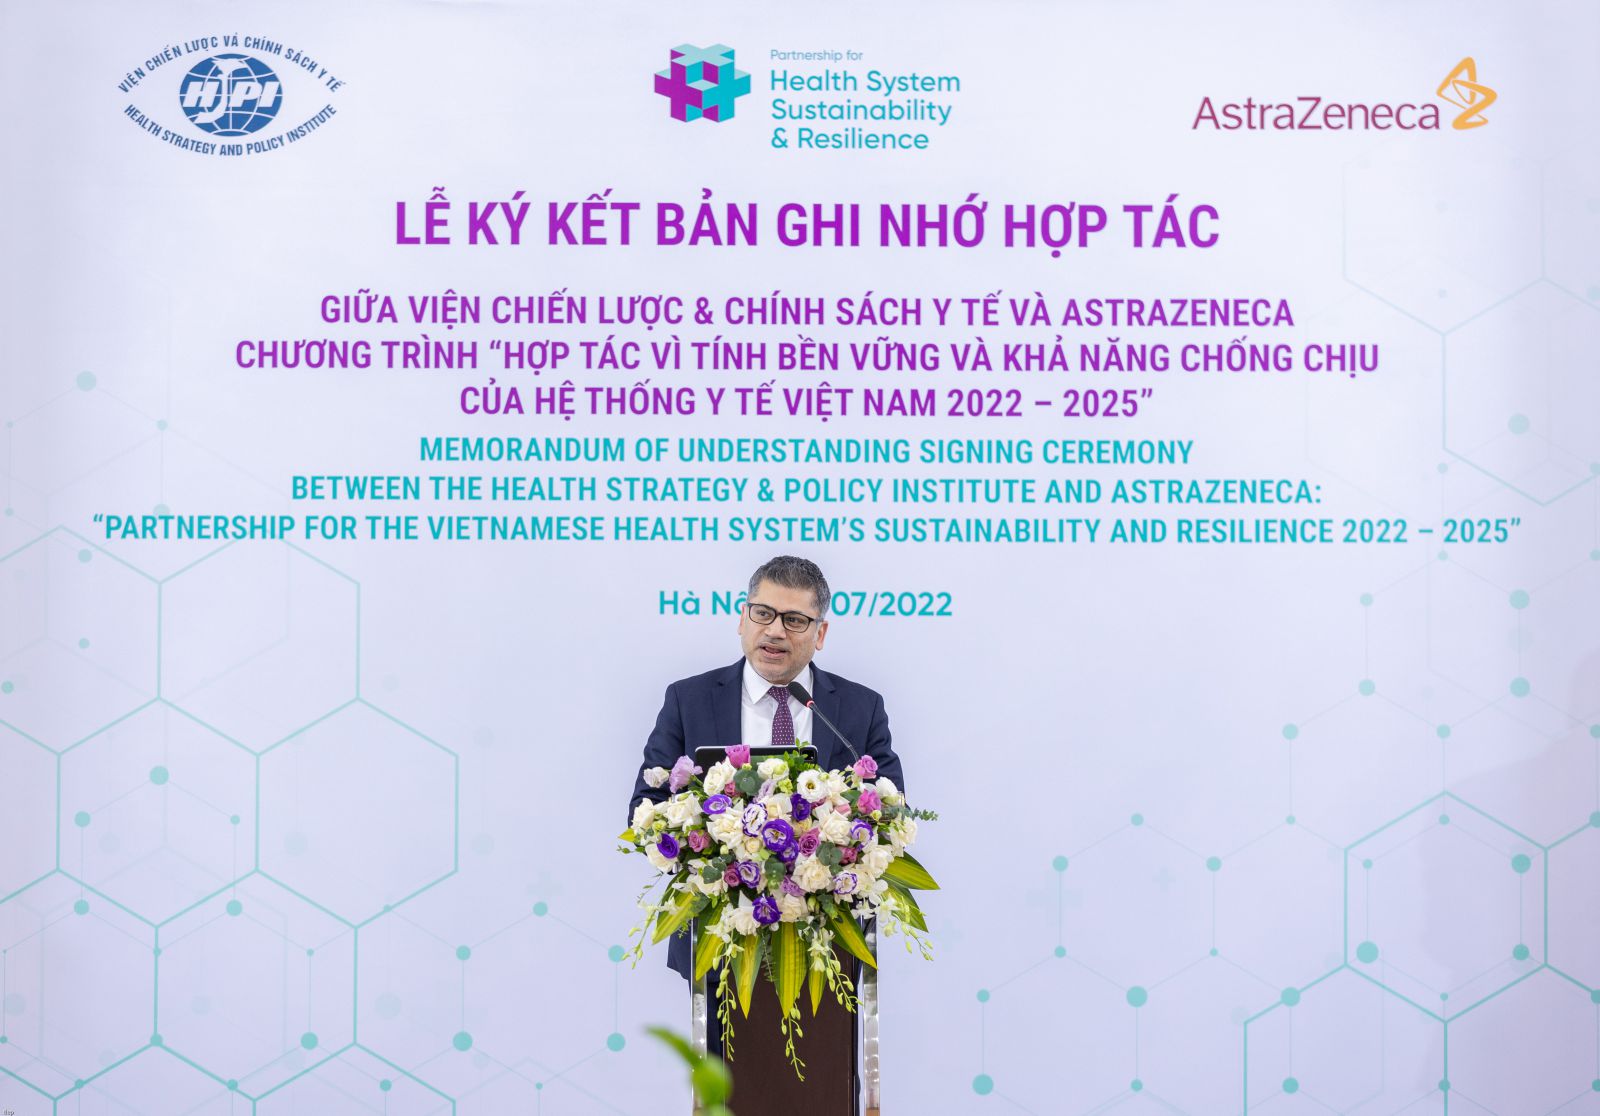 Ông Nitin Kapoor, Chủ tịch kiêm Tổng Giám đốc AstraZeneca Việt Nam, kỳ vọng sáng kiến hợp tác với Viện CL&CSYT sẽ góp phần củng cố toàn diện hệ thống y tế Việt Nam 